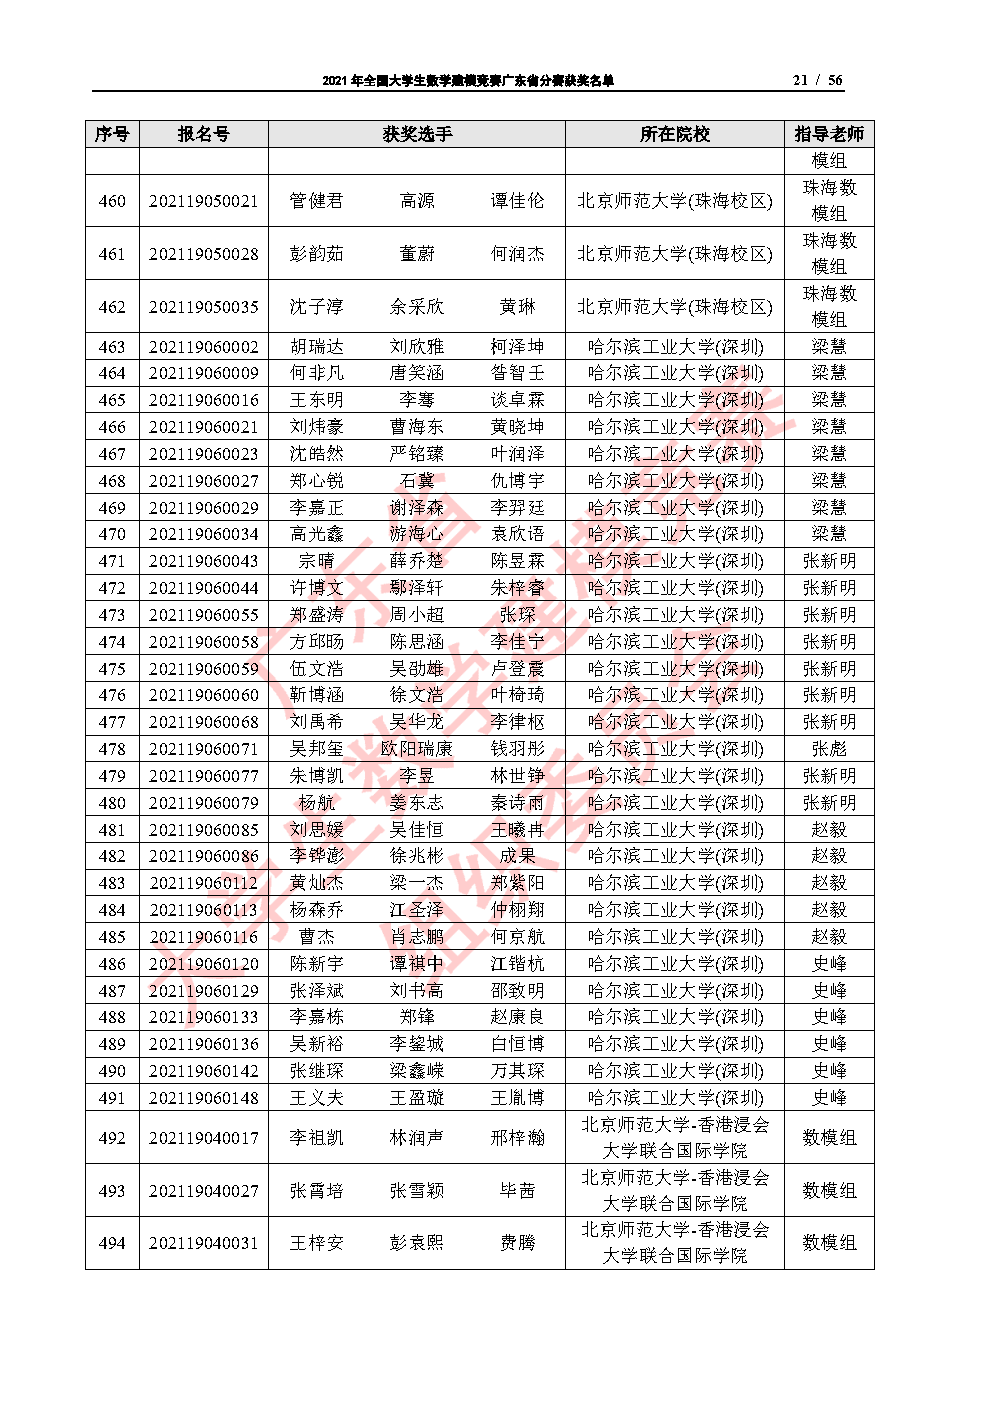 2021年全国大学生数学建模竞赛广东省分赛获奖名单_Page21.png